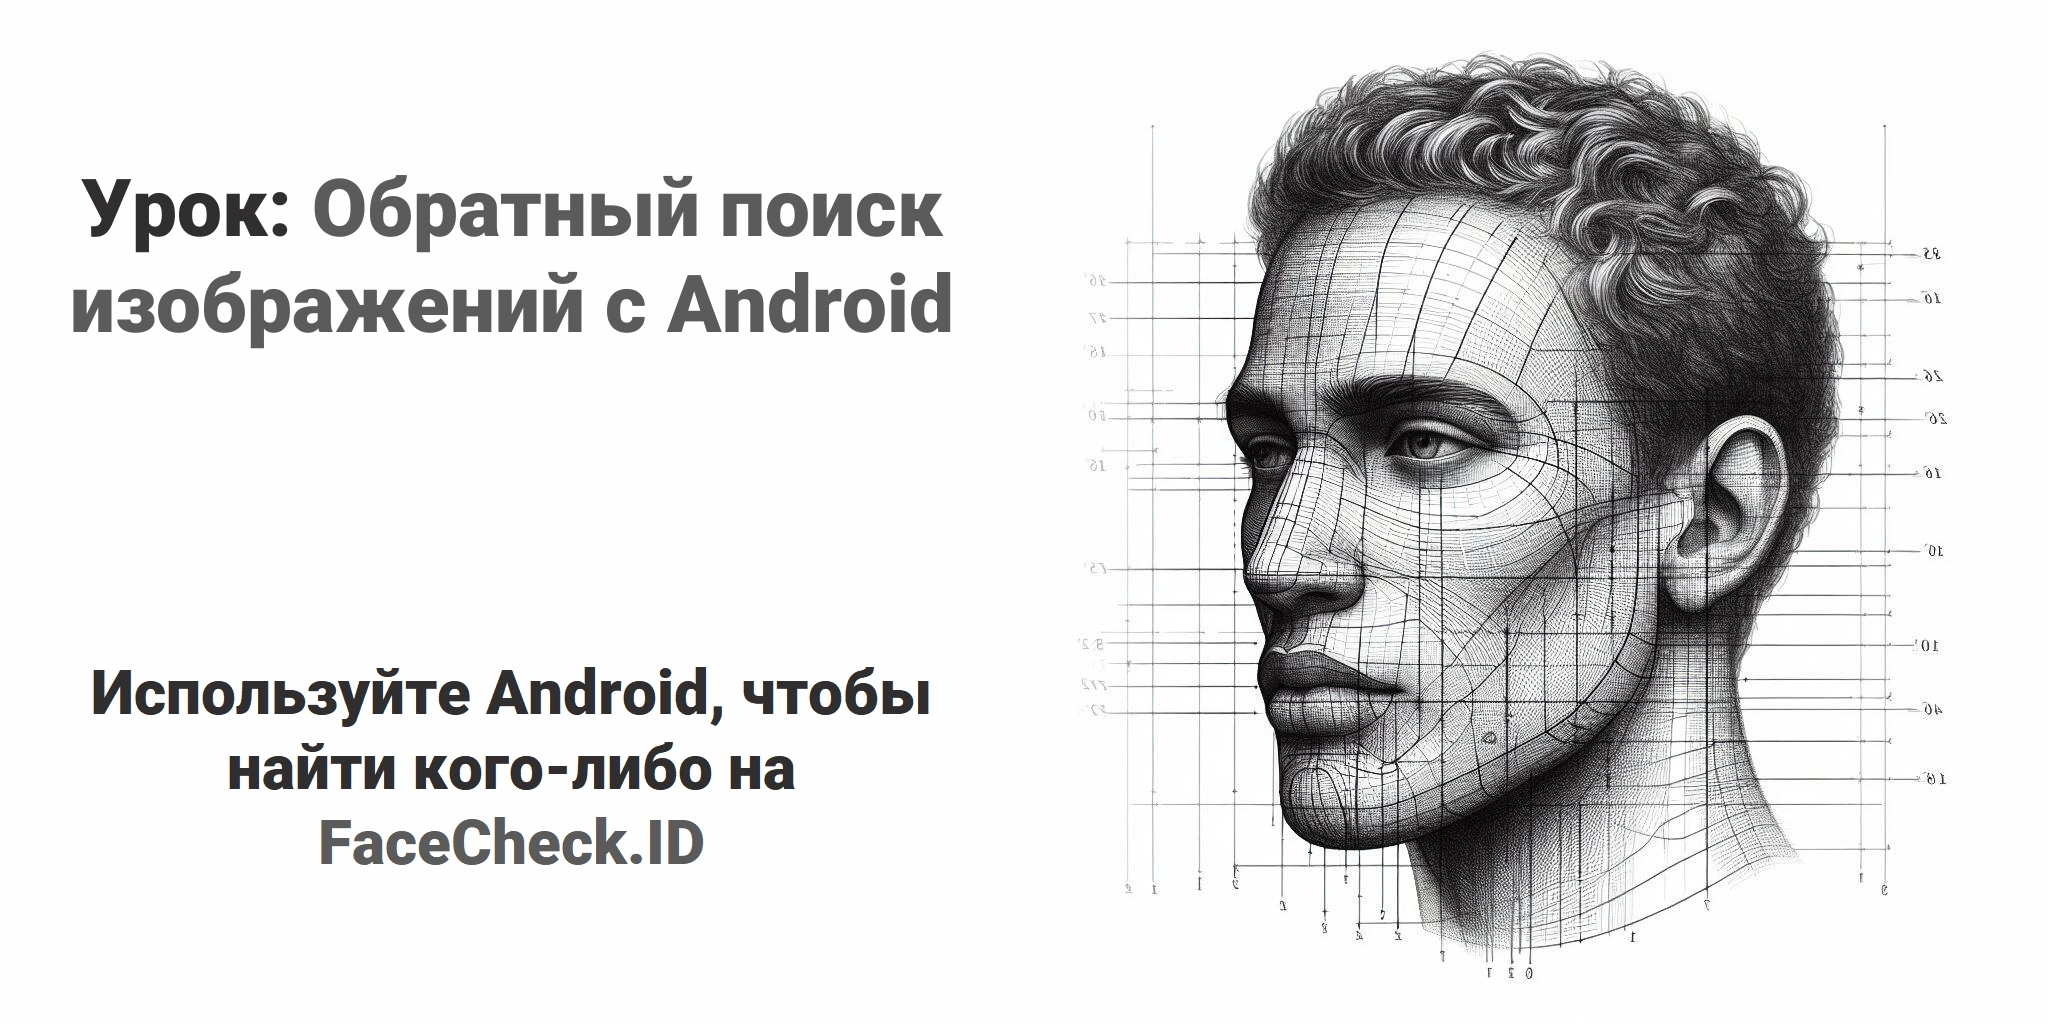 Урок: Обратный поиск изображений с Android Используйте Android, чтобы найти кого-либо на FaceCheck.ID